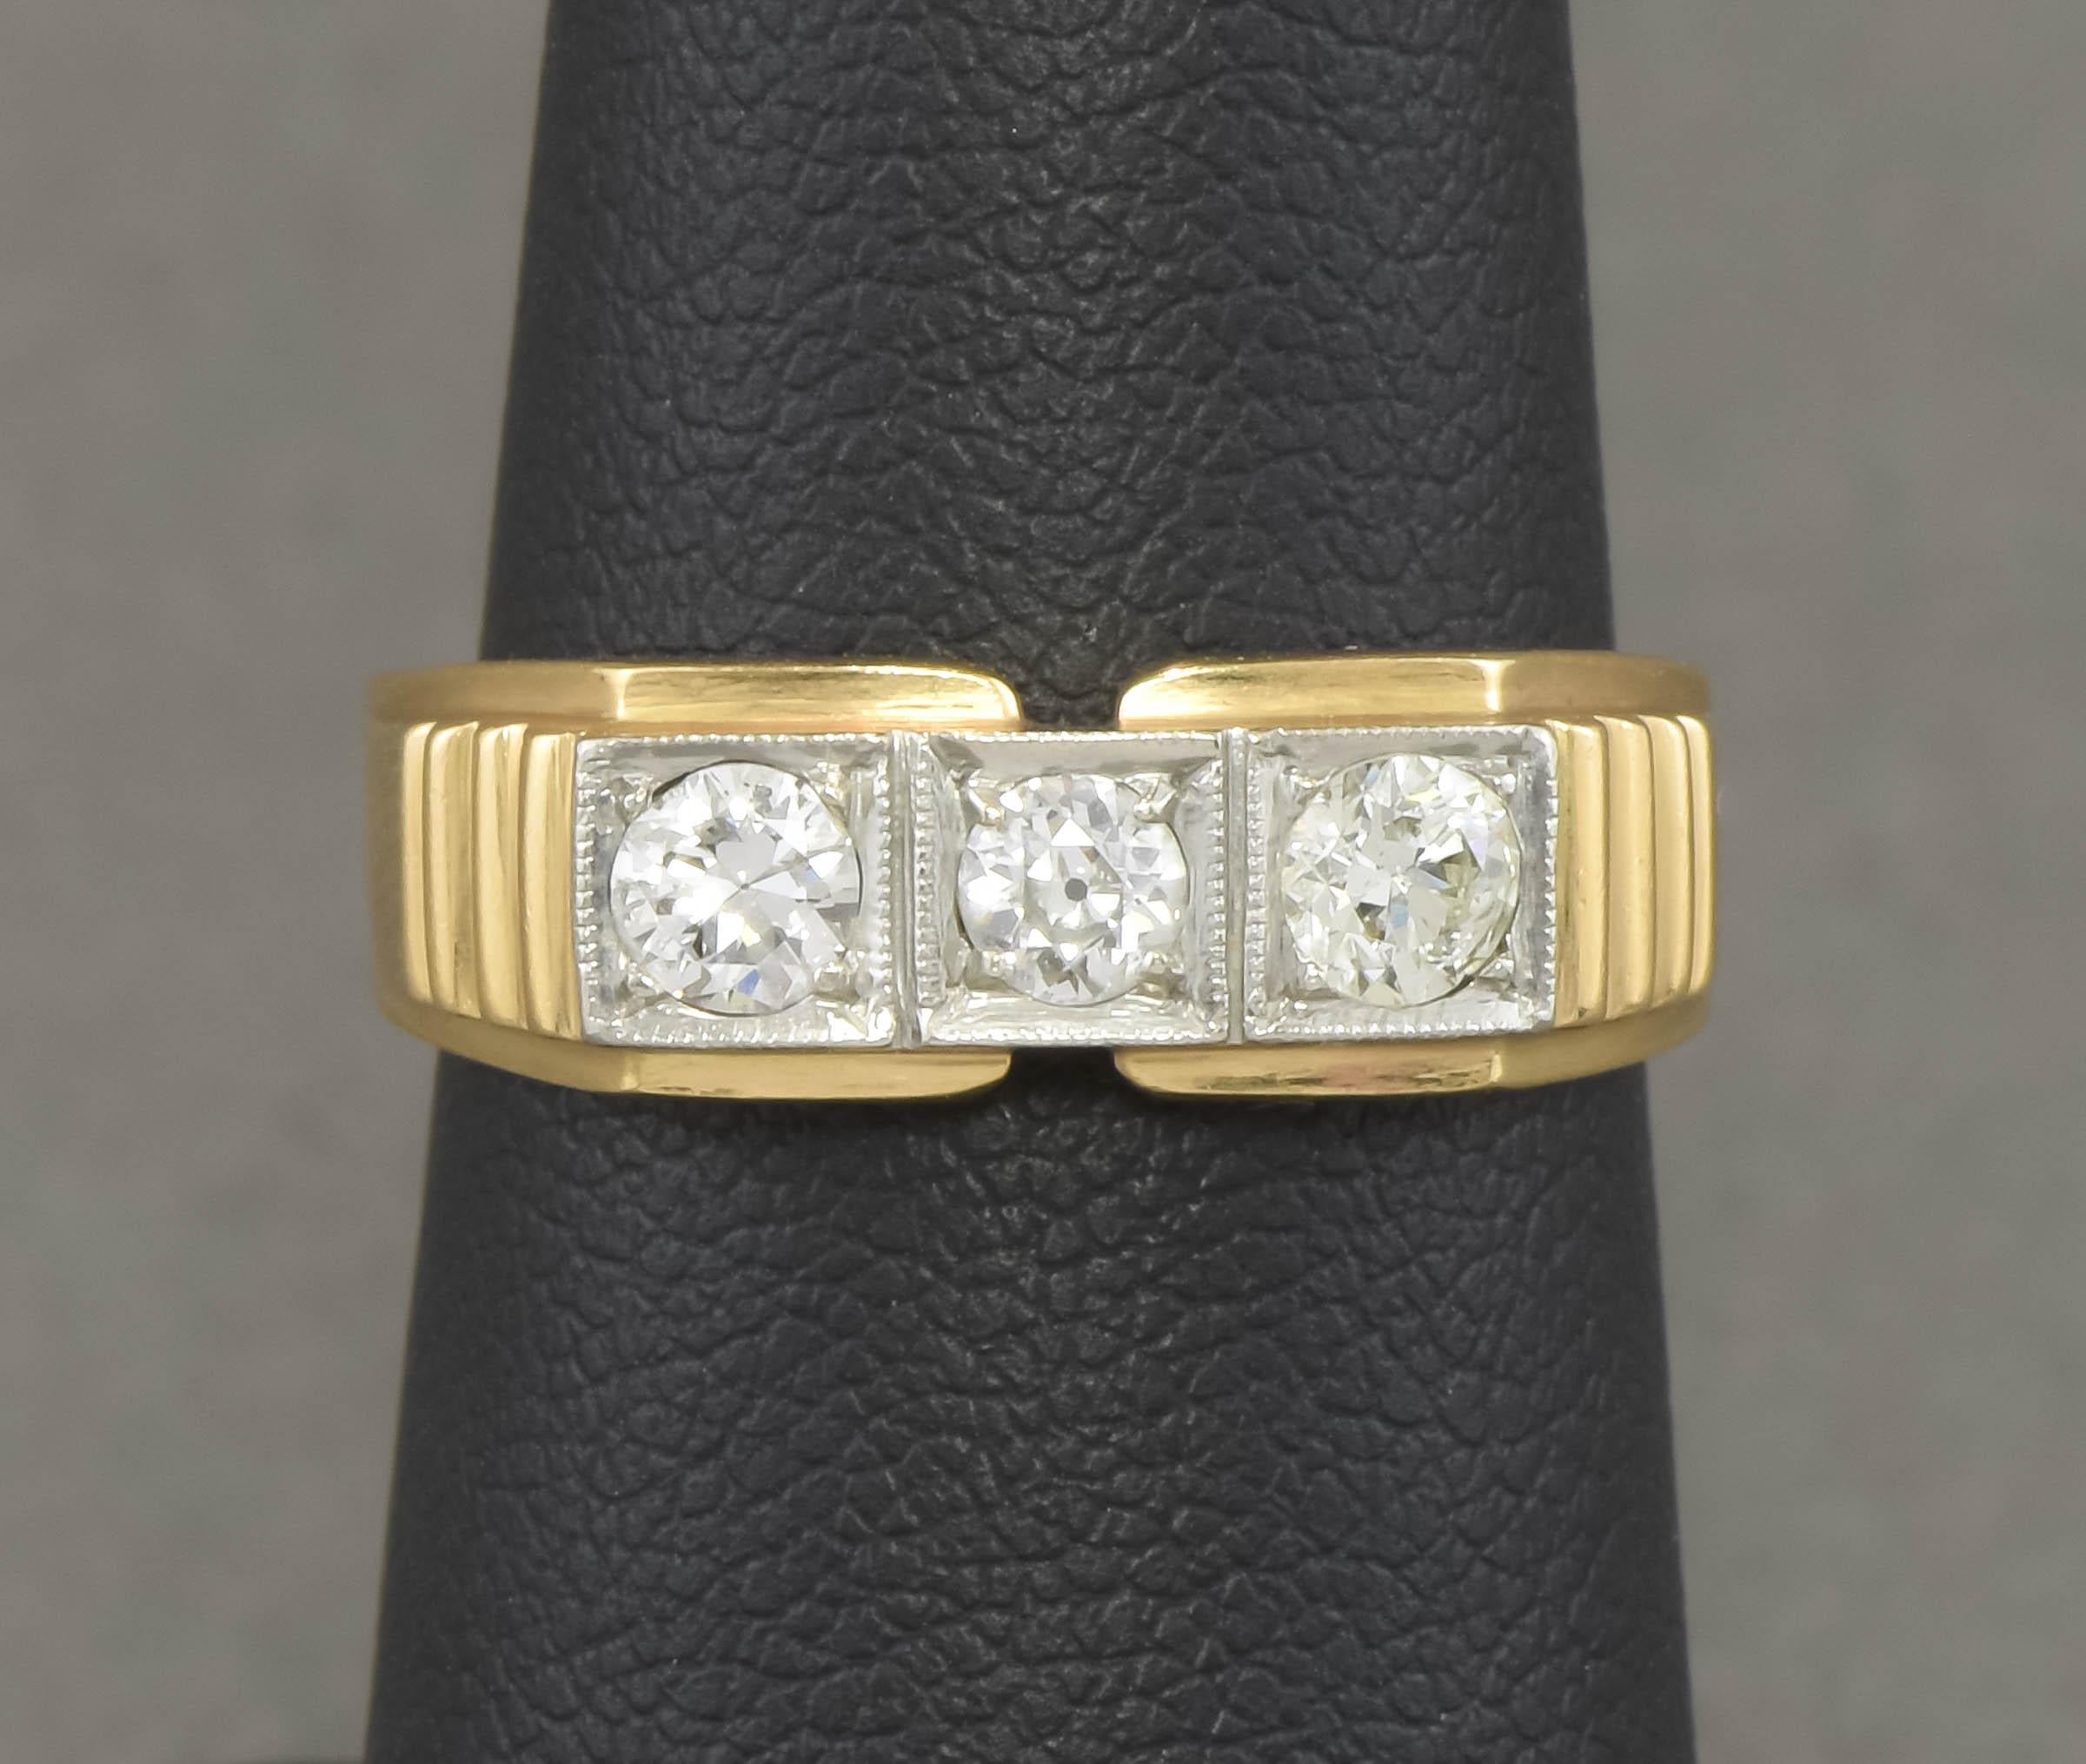 Ich freue mich, dieses umfangreiche und luxuriöse Diamantband mit altem Schliff in hochkarätigem Gold anbieten zu können.  Er stammt aus den 1930er bis 1940er Jahren und weist großartige Designelemente auf, die dem stromlinienförmigen Art-Déco-Stil